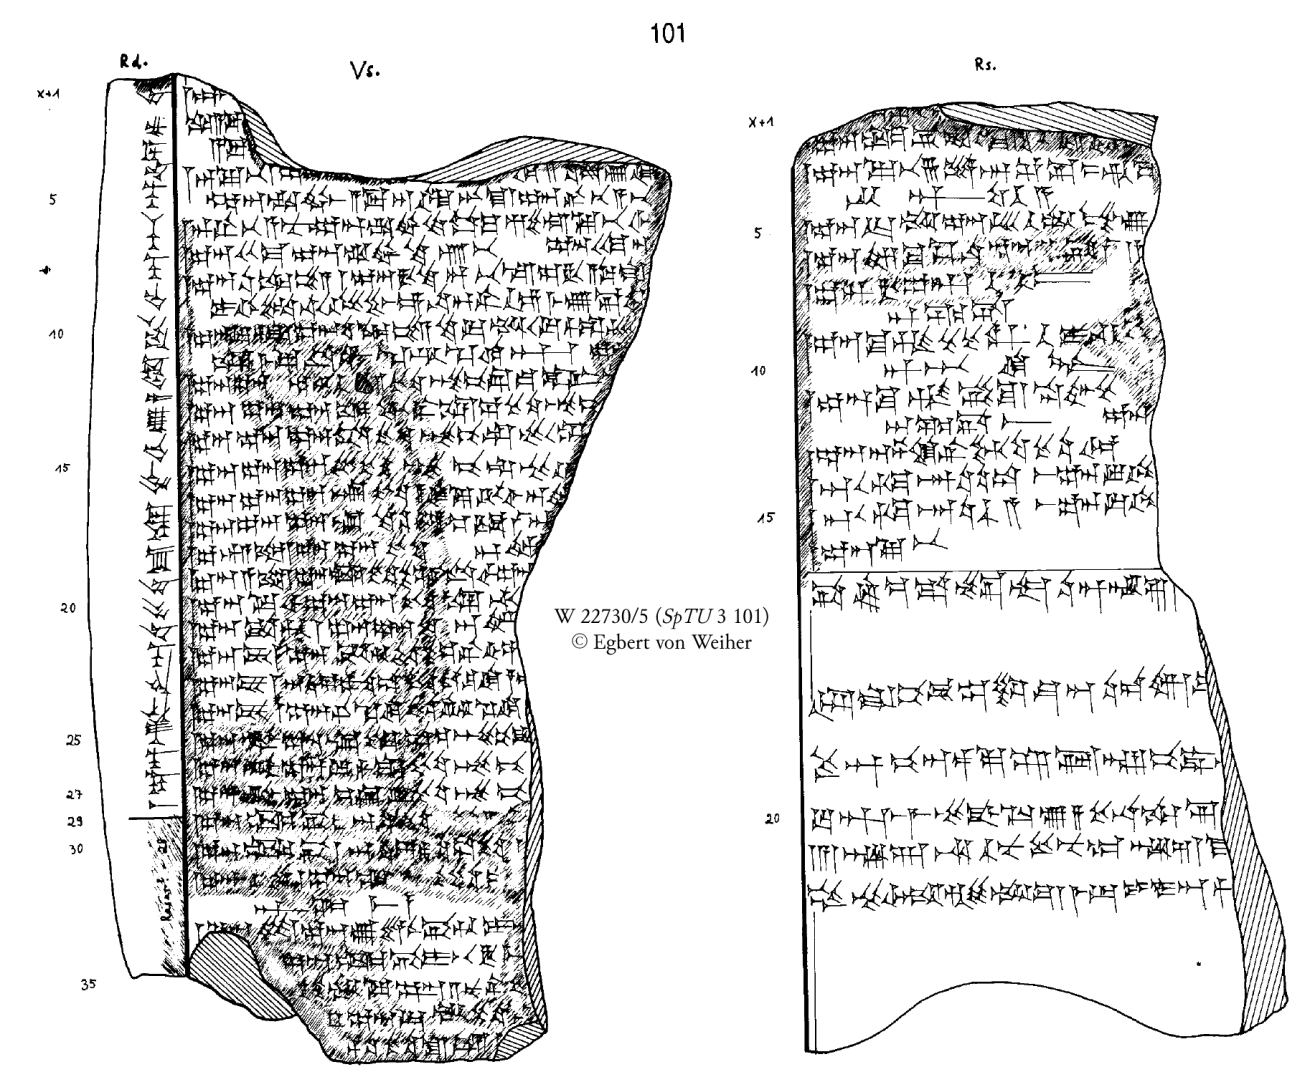 Abb. IX. Keilschrifttexte und Übersetzungen der Passagen CCP 3.1.u5 - Enūma Anu Enlil 53 (auf astrologische Vorhersagen bezogener Auszug, Quelle s.o.) 4 dudu.idim ana mulx-x x x x x x MIN ZIMBIRki [.